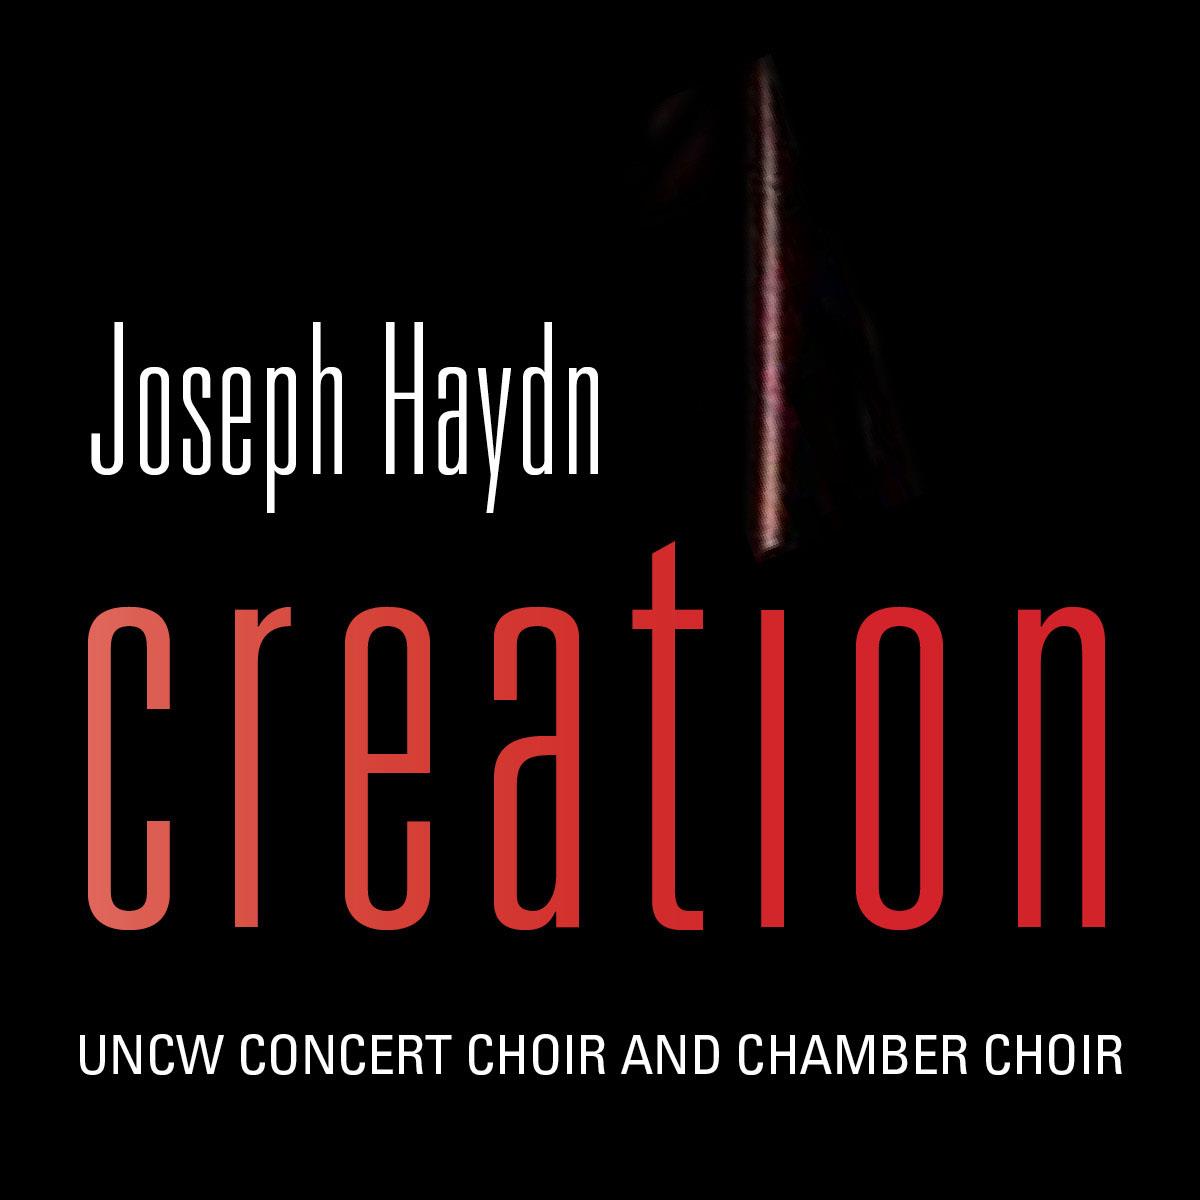 Master Calendar Event Details UNCW Concert Choir and Chamber Choir